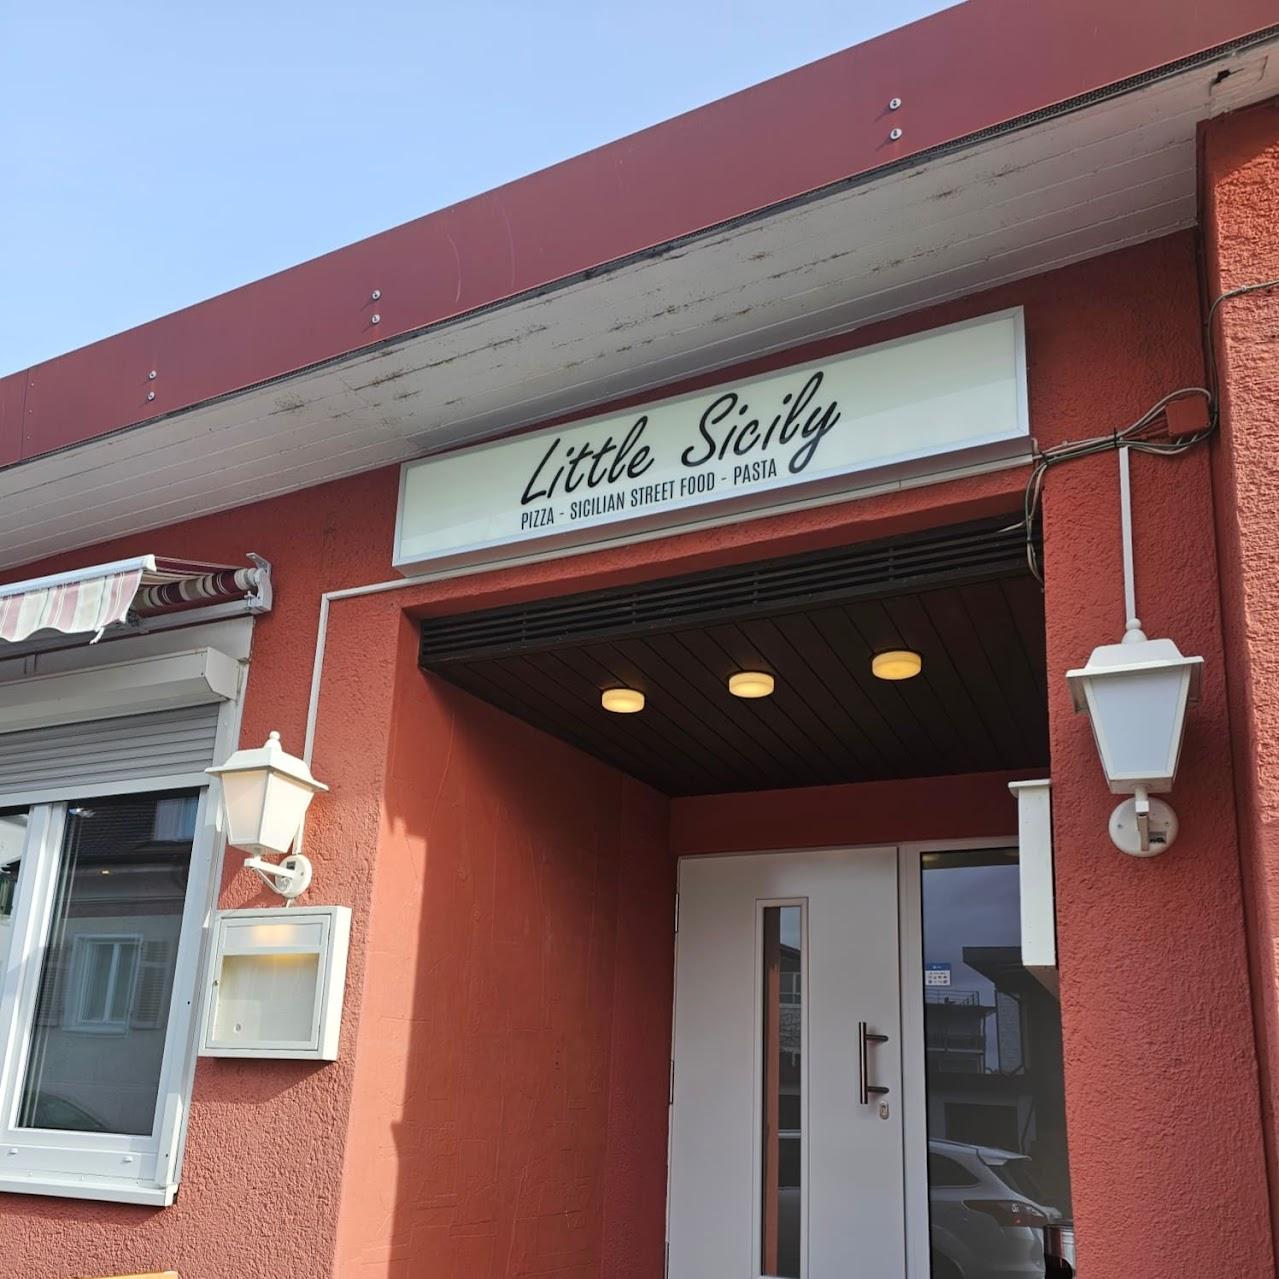 Restaurant "Little_Sicily_WT" in Waldshut-Tiengen